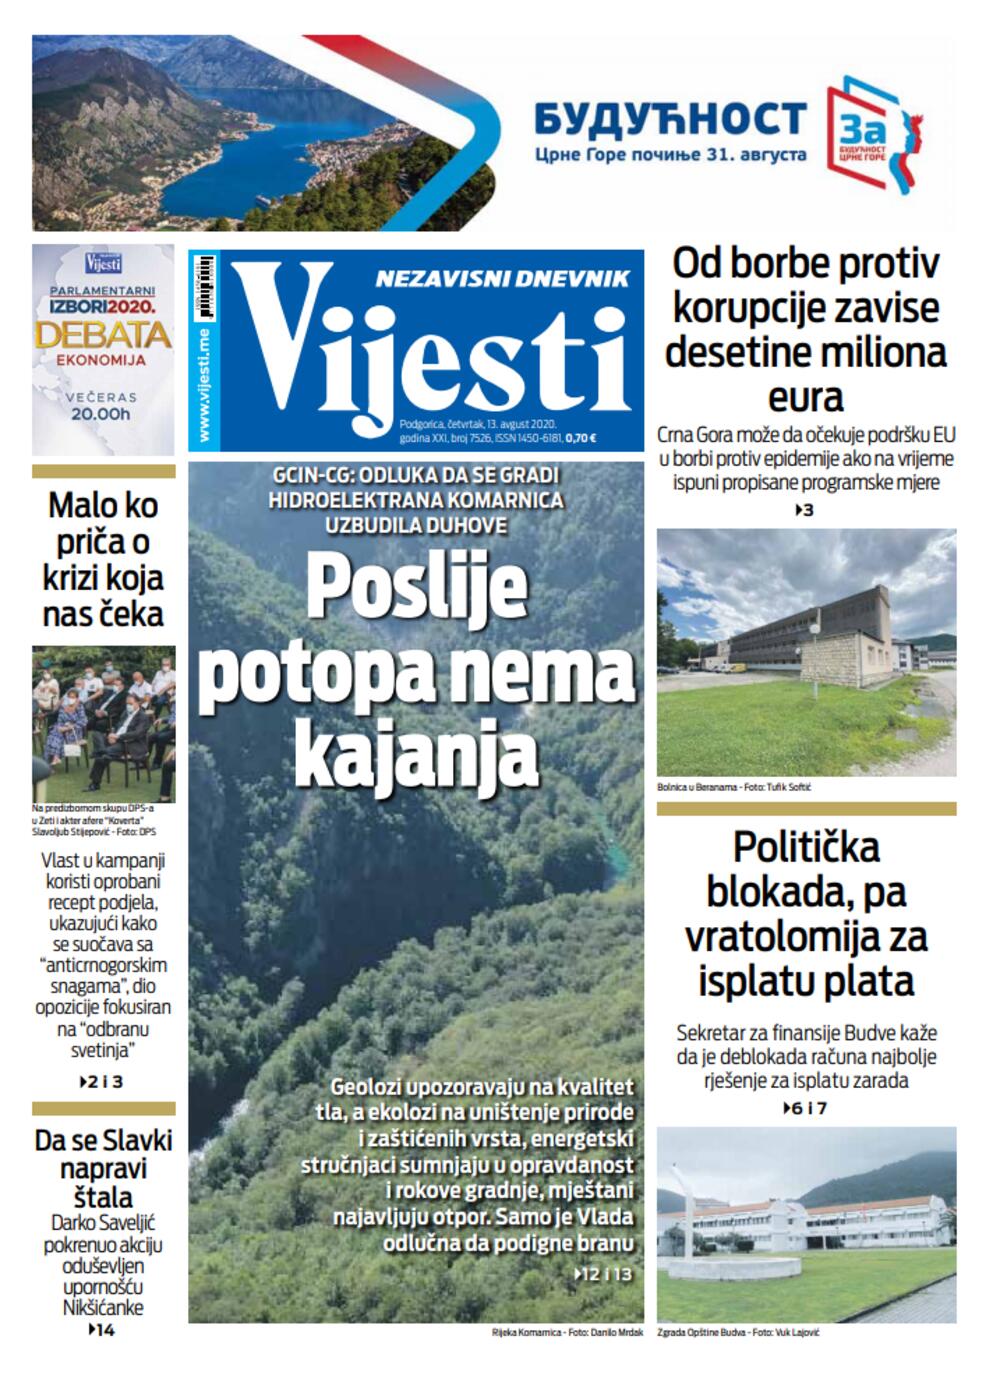 Naslovna strana "Vijesti" za 13. avgust 2020., Foto: Vijesti